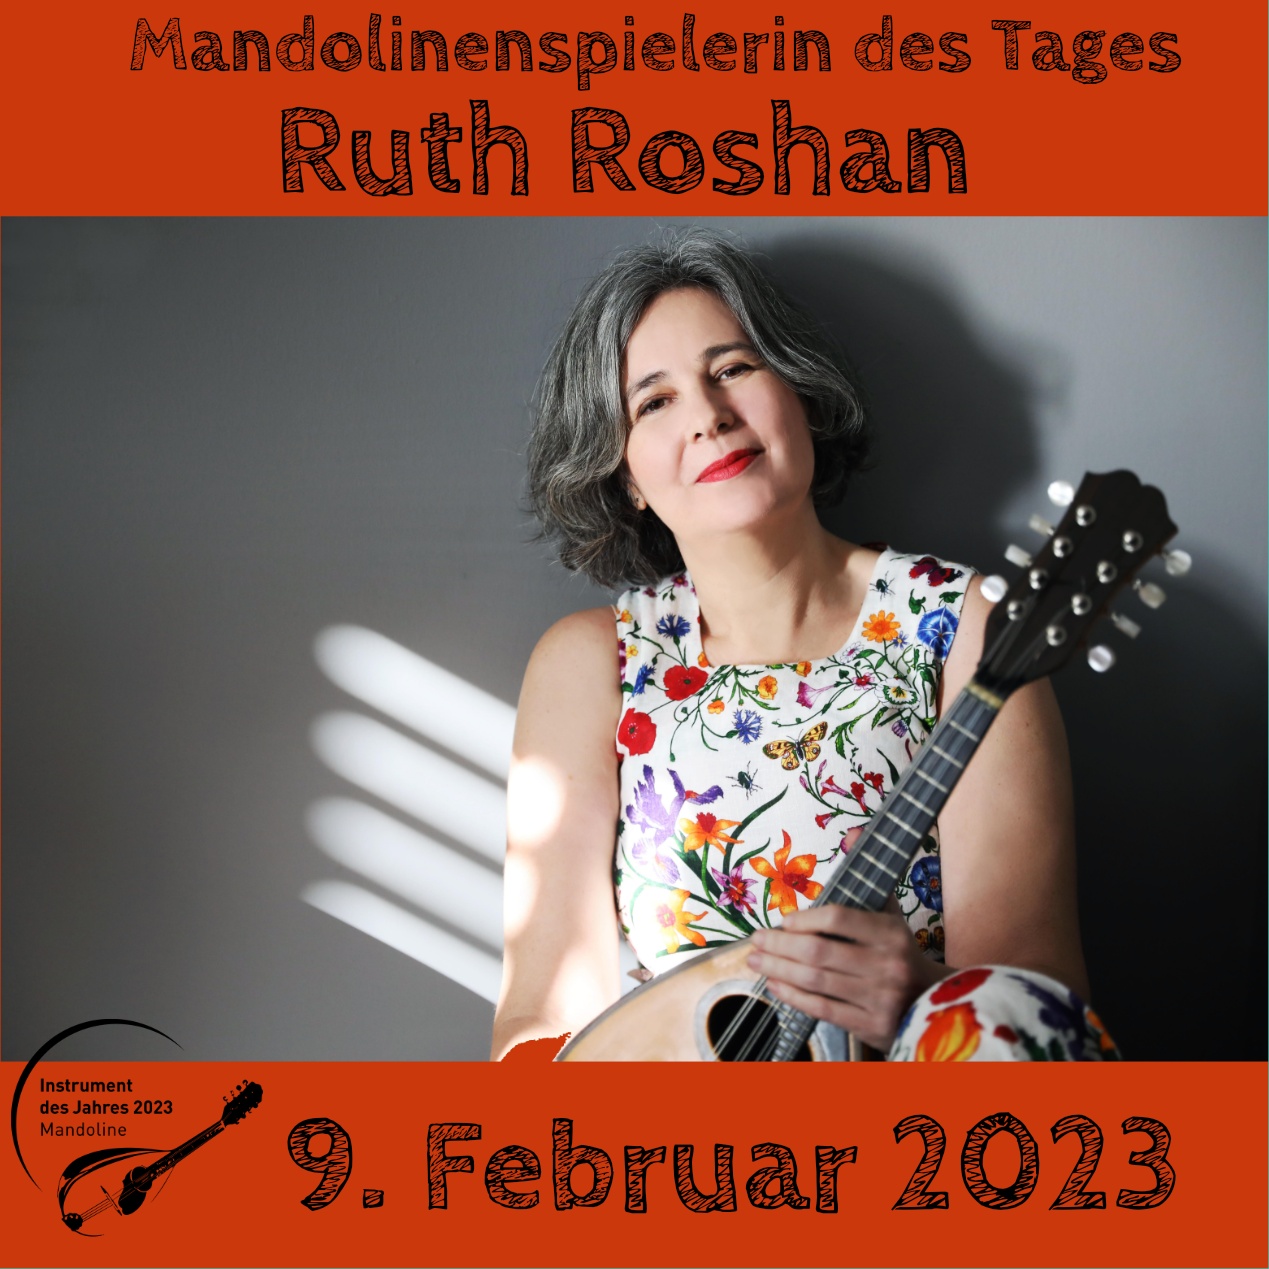 Ruth Roshan Mandoline Instrument des Jahres 2023 Mandolinenspielerin des Tages